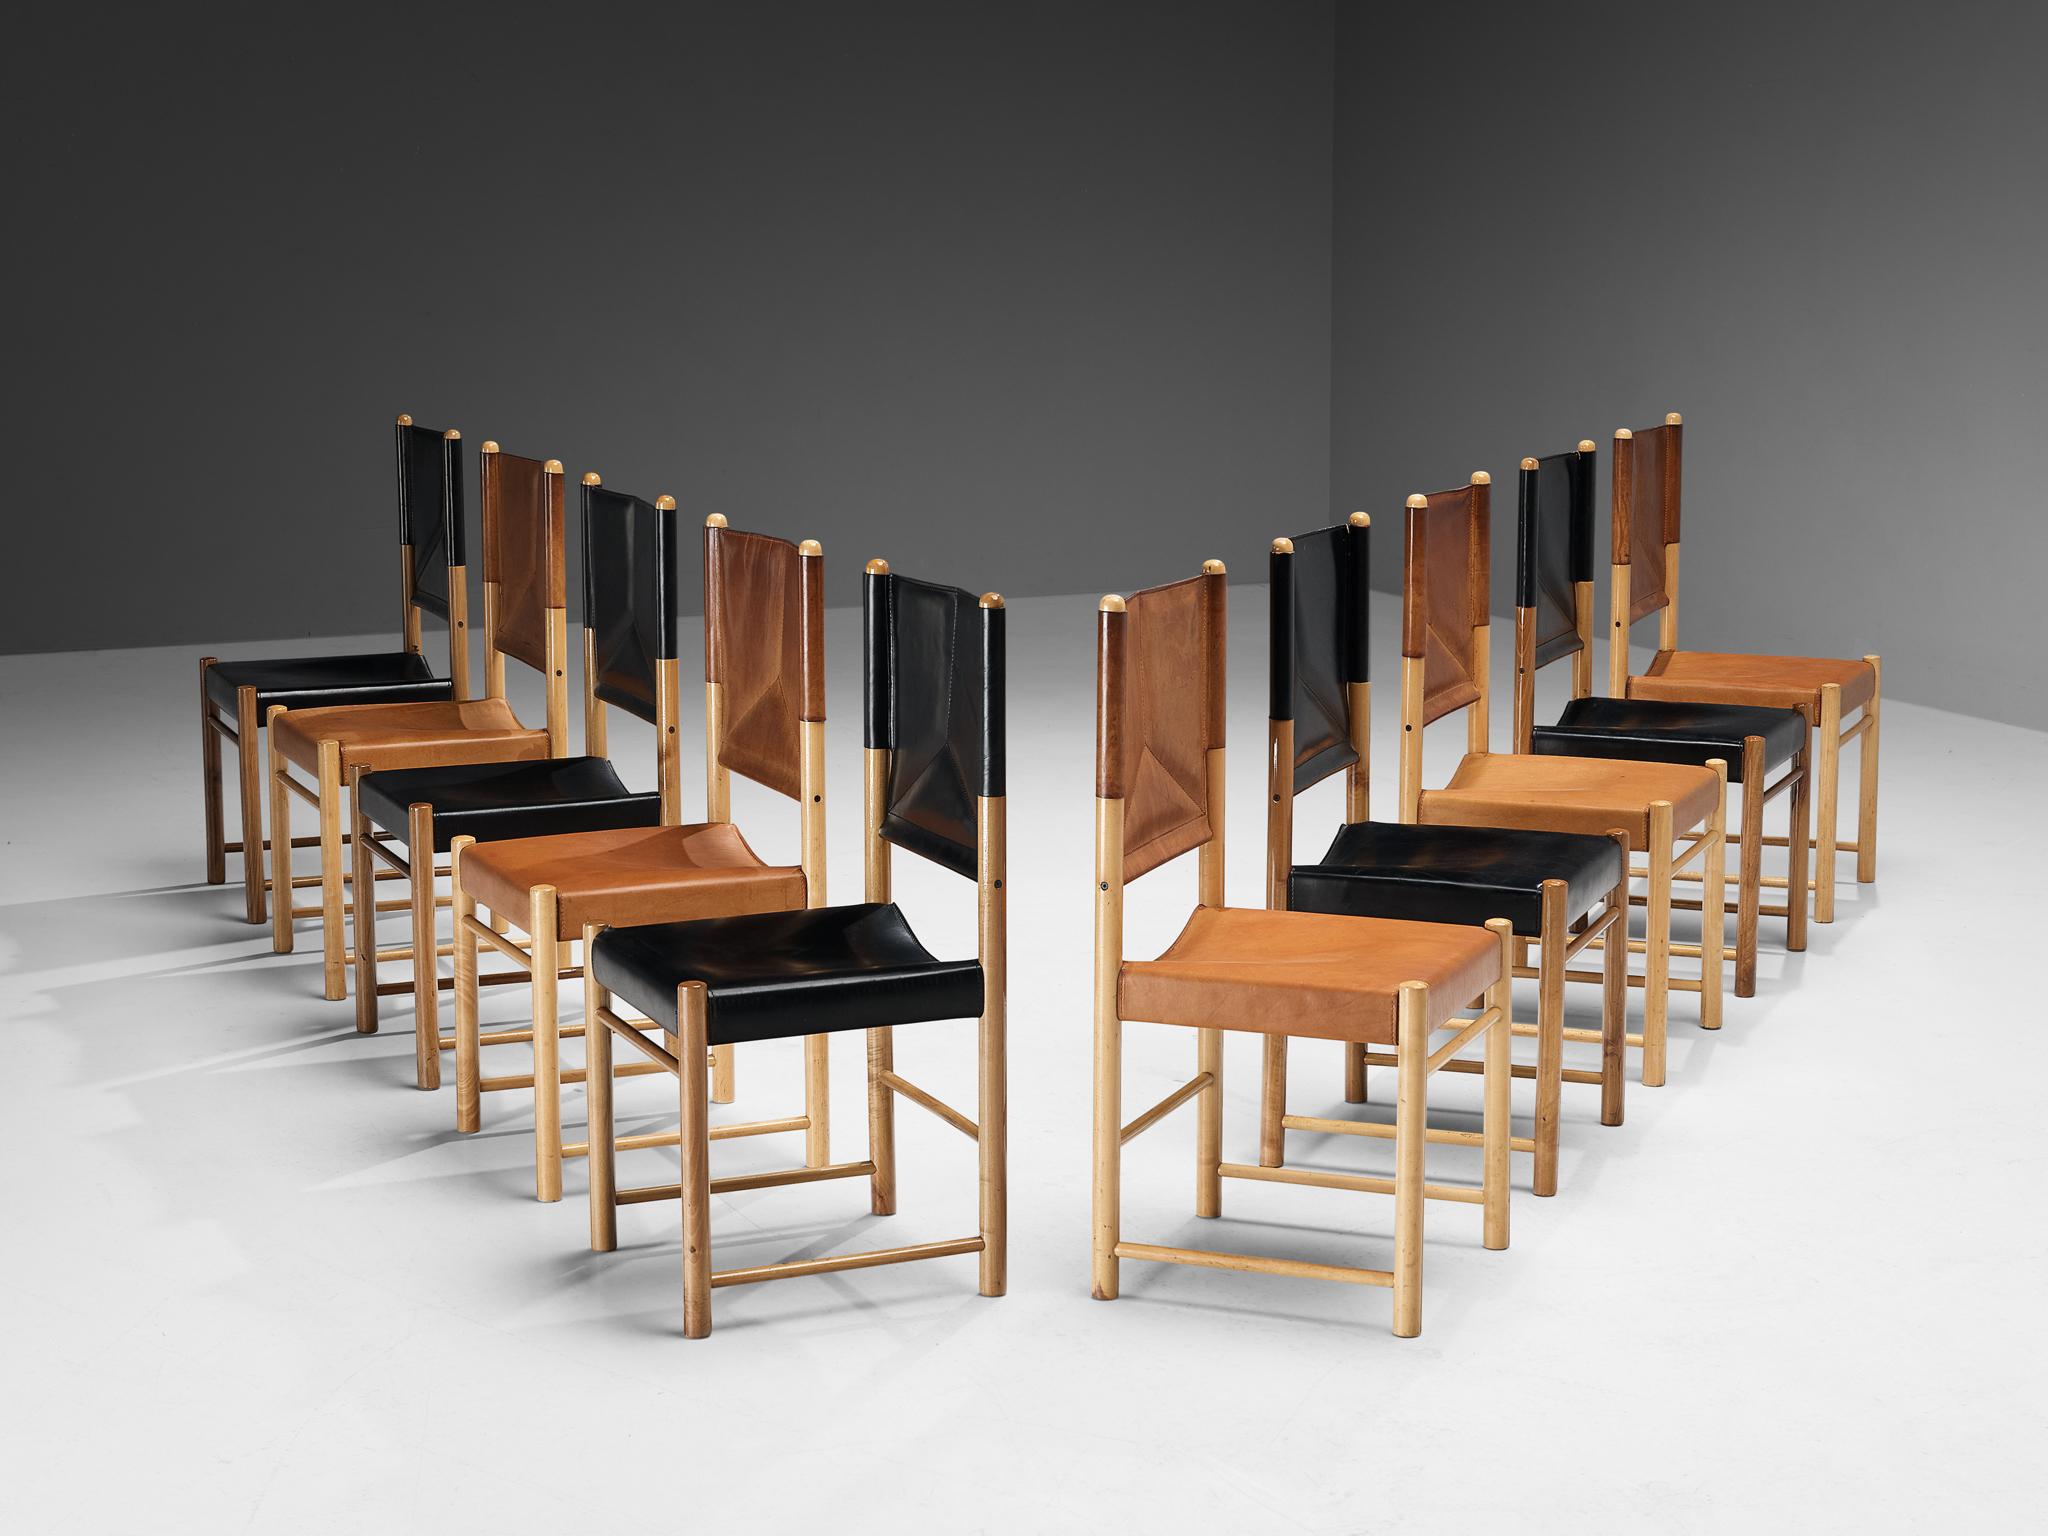 Ensemble de dix chaises de salle à manger, hêtre, cuir, Italie, années 1970

Un ensemble de chaises délicates, bien proportionnées, qui rehaussent la salle à manger d'une manière vigoureuse et forte. Le cadre en bois est composé de poutres